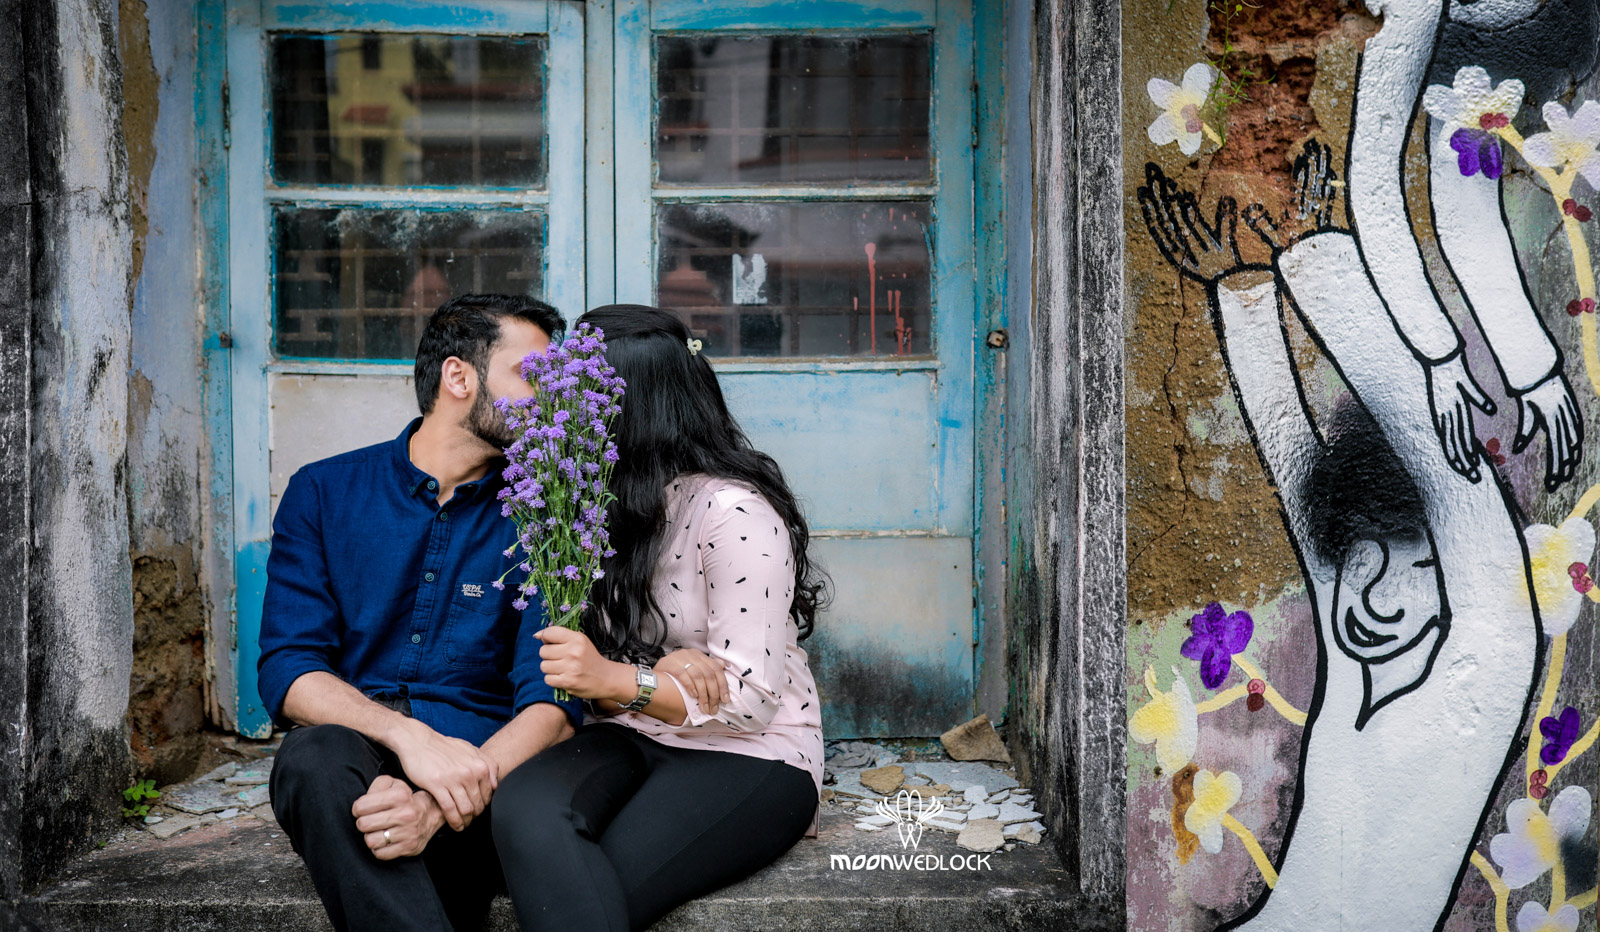 prewedding-photoshoot-in-bangalore-moonwedlock (28)